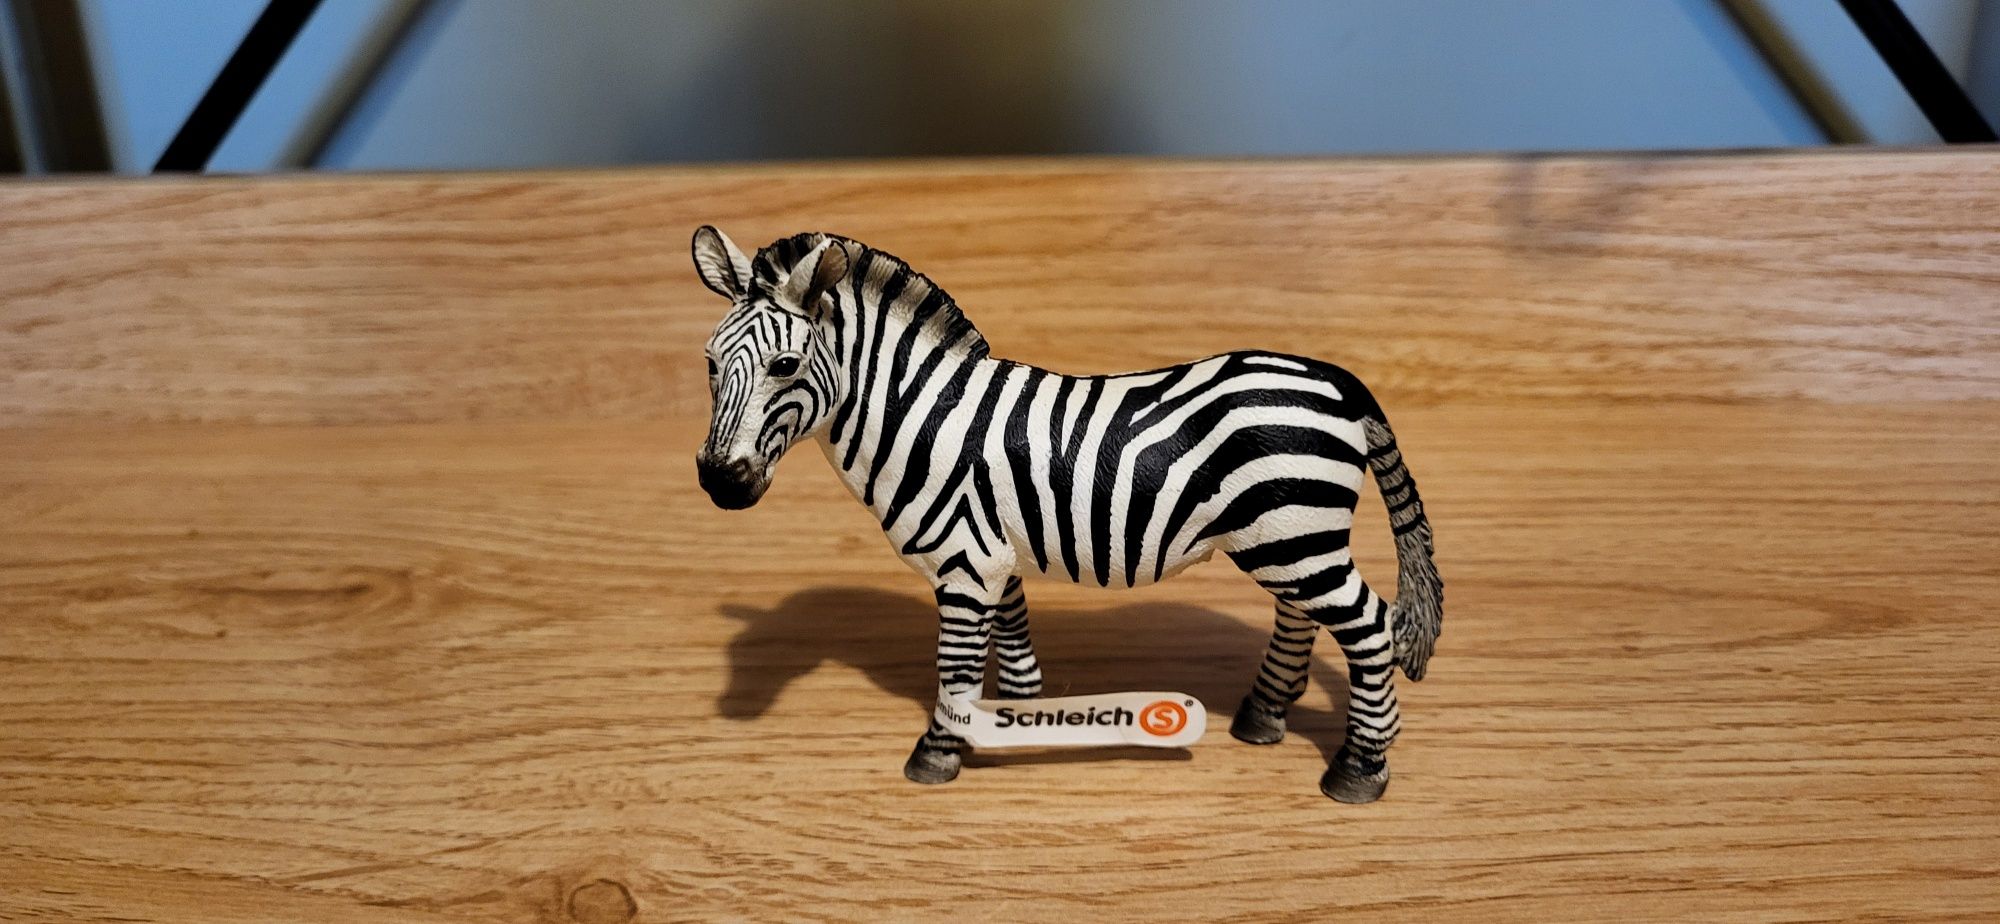 Schleich zebra samica figurka model wycofany z 2008